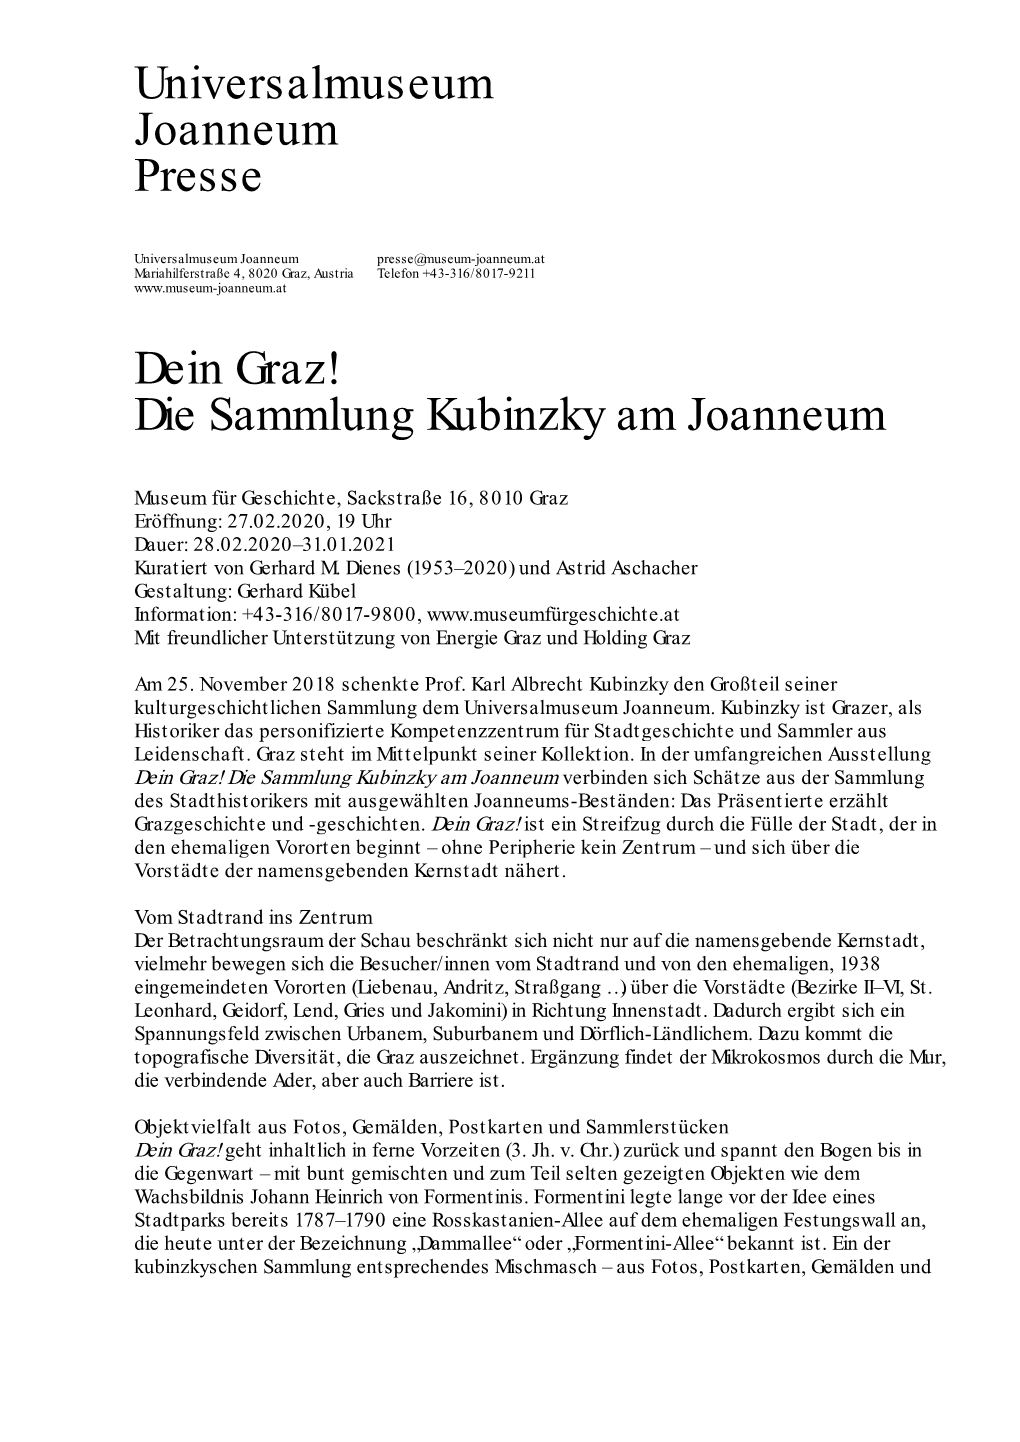 Universalmuseum Joanneum Presse Dein Graz! Die Sammlung Kubinzky